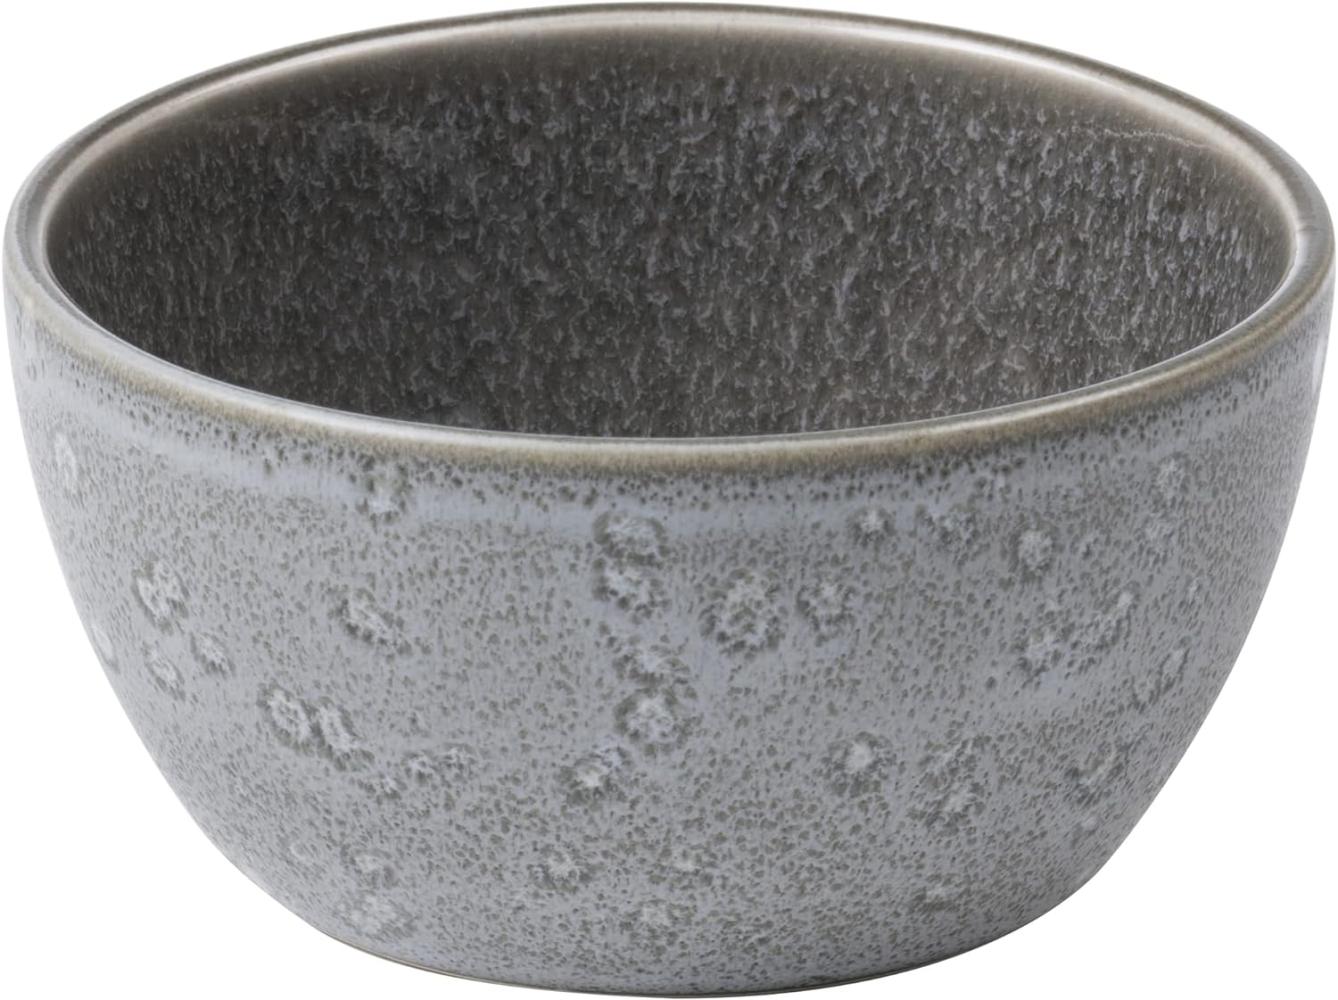 Bitz Bowl grey/grey 10 cm Bild 1